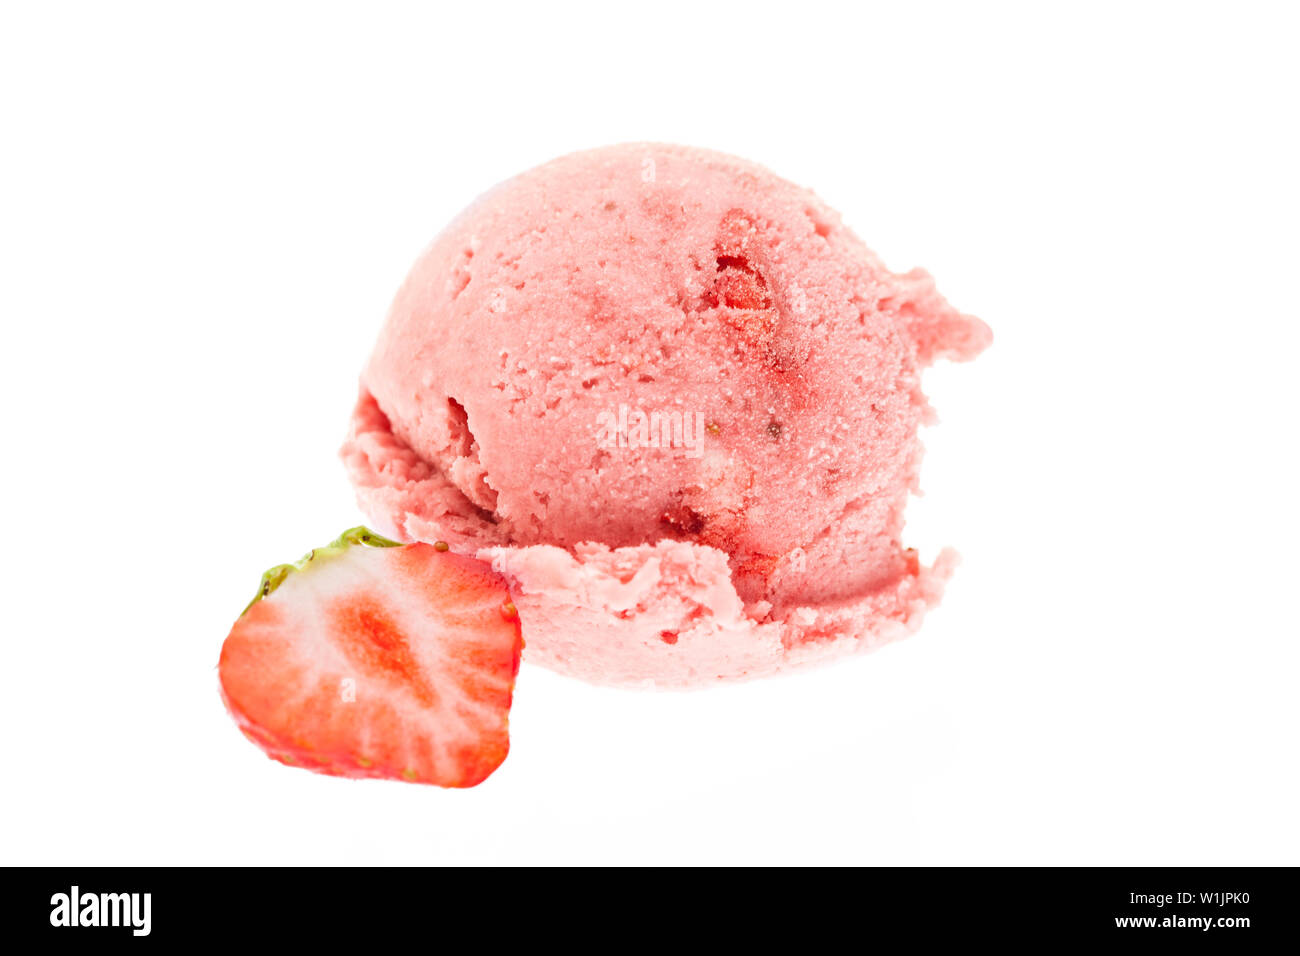 Single Erdbeereis creamball Vorderansicht mit einem Stück Erdbeere auf weißem Hintergrund Stockfoto